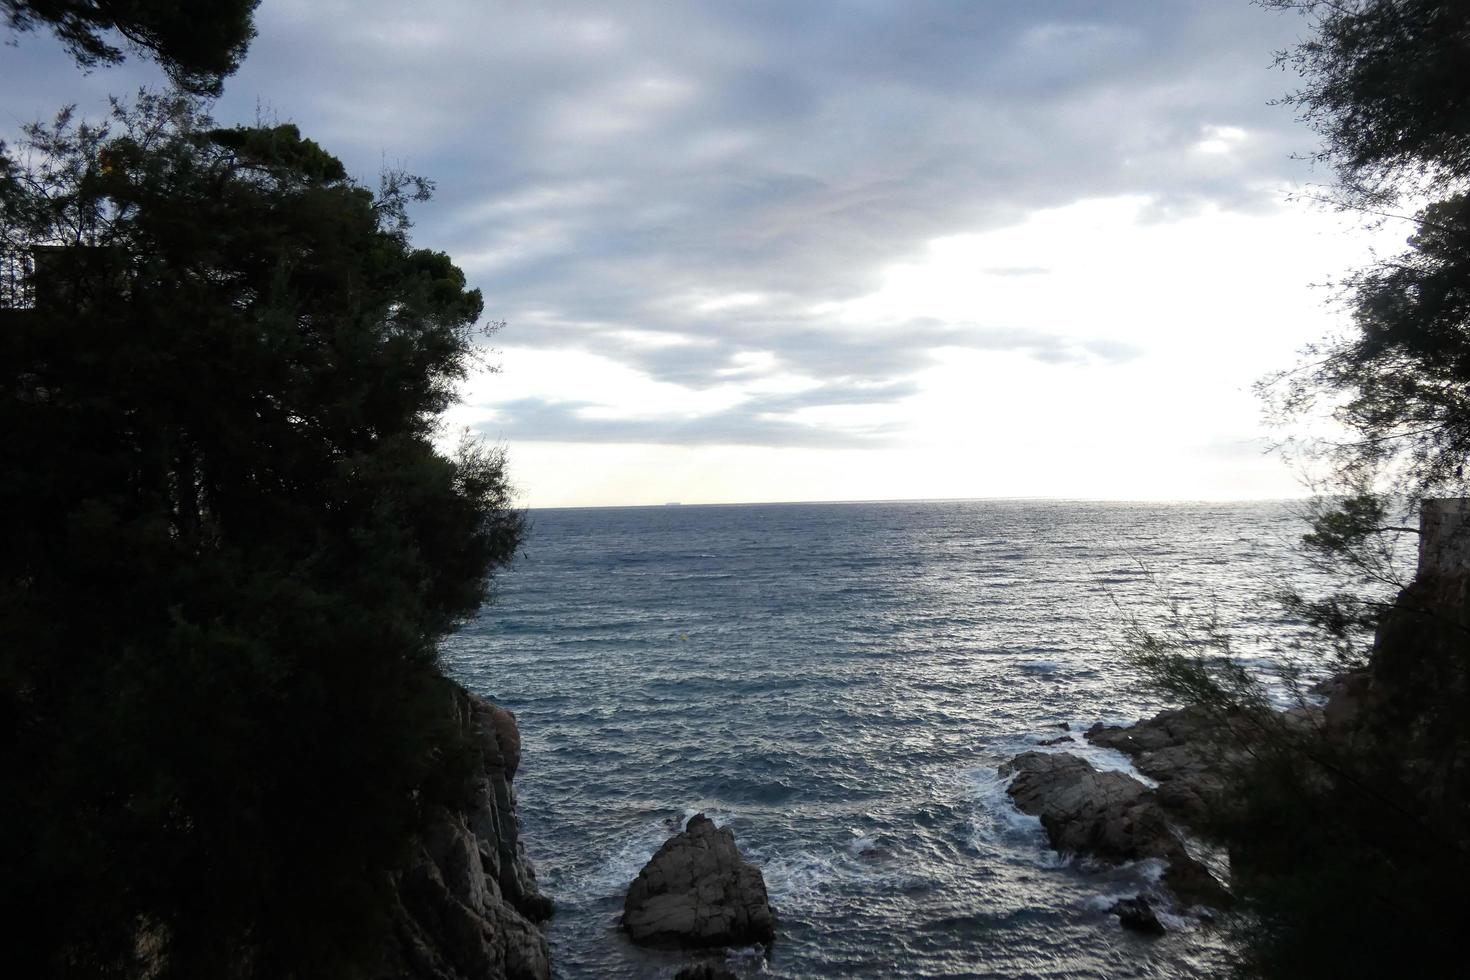 caminho de ronda, uma estrada paralela à costa brava catalã, localizada no mar mediterrâneo, no norte da catalunha, espanha. foto